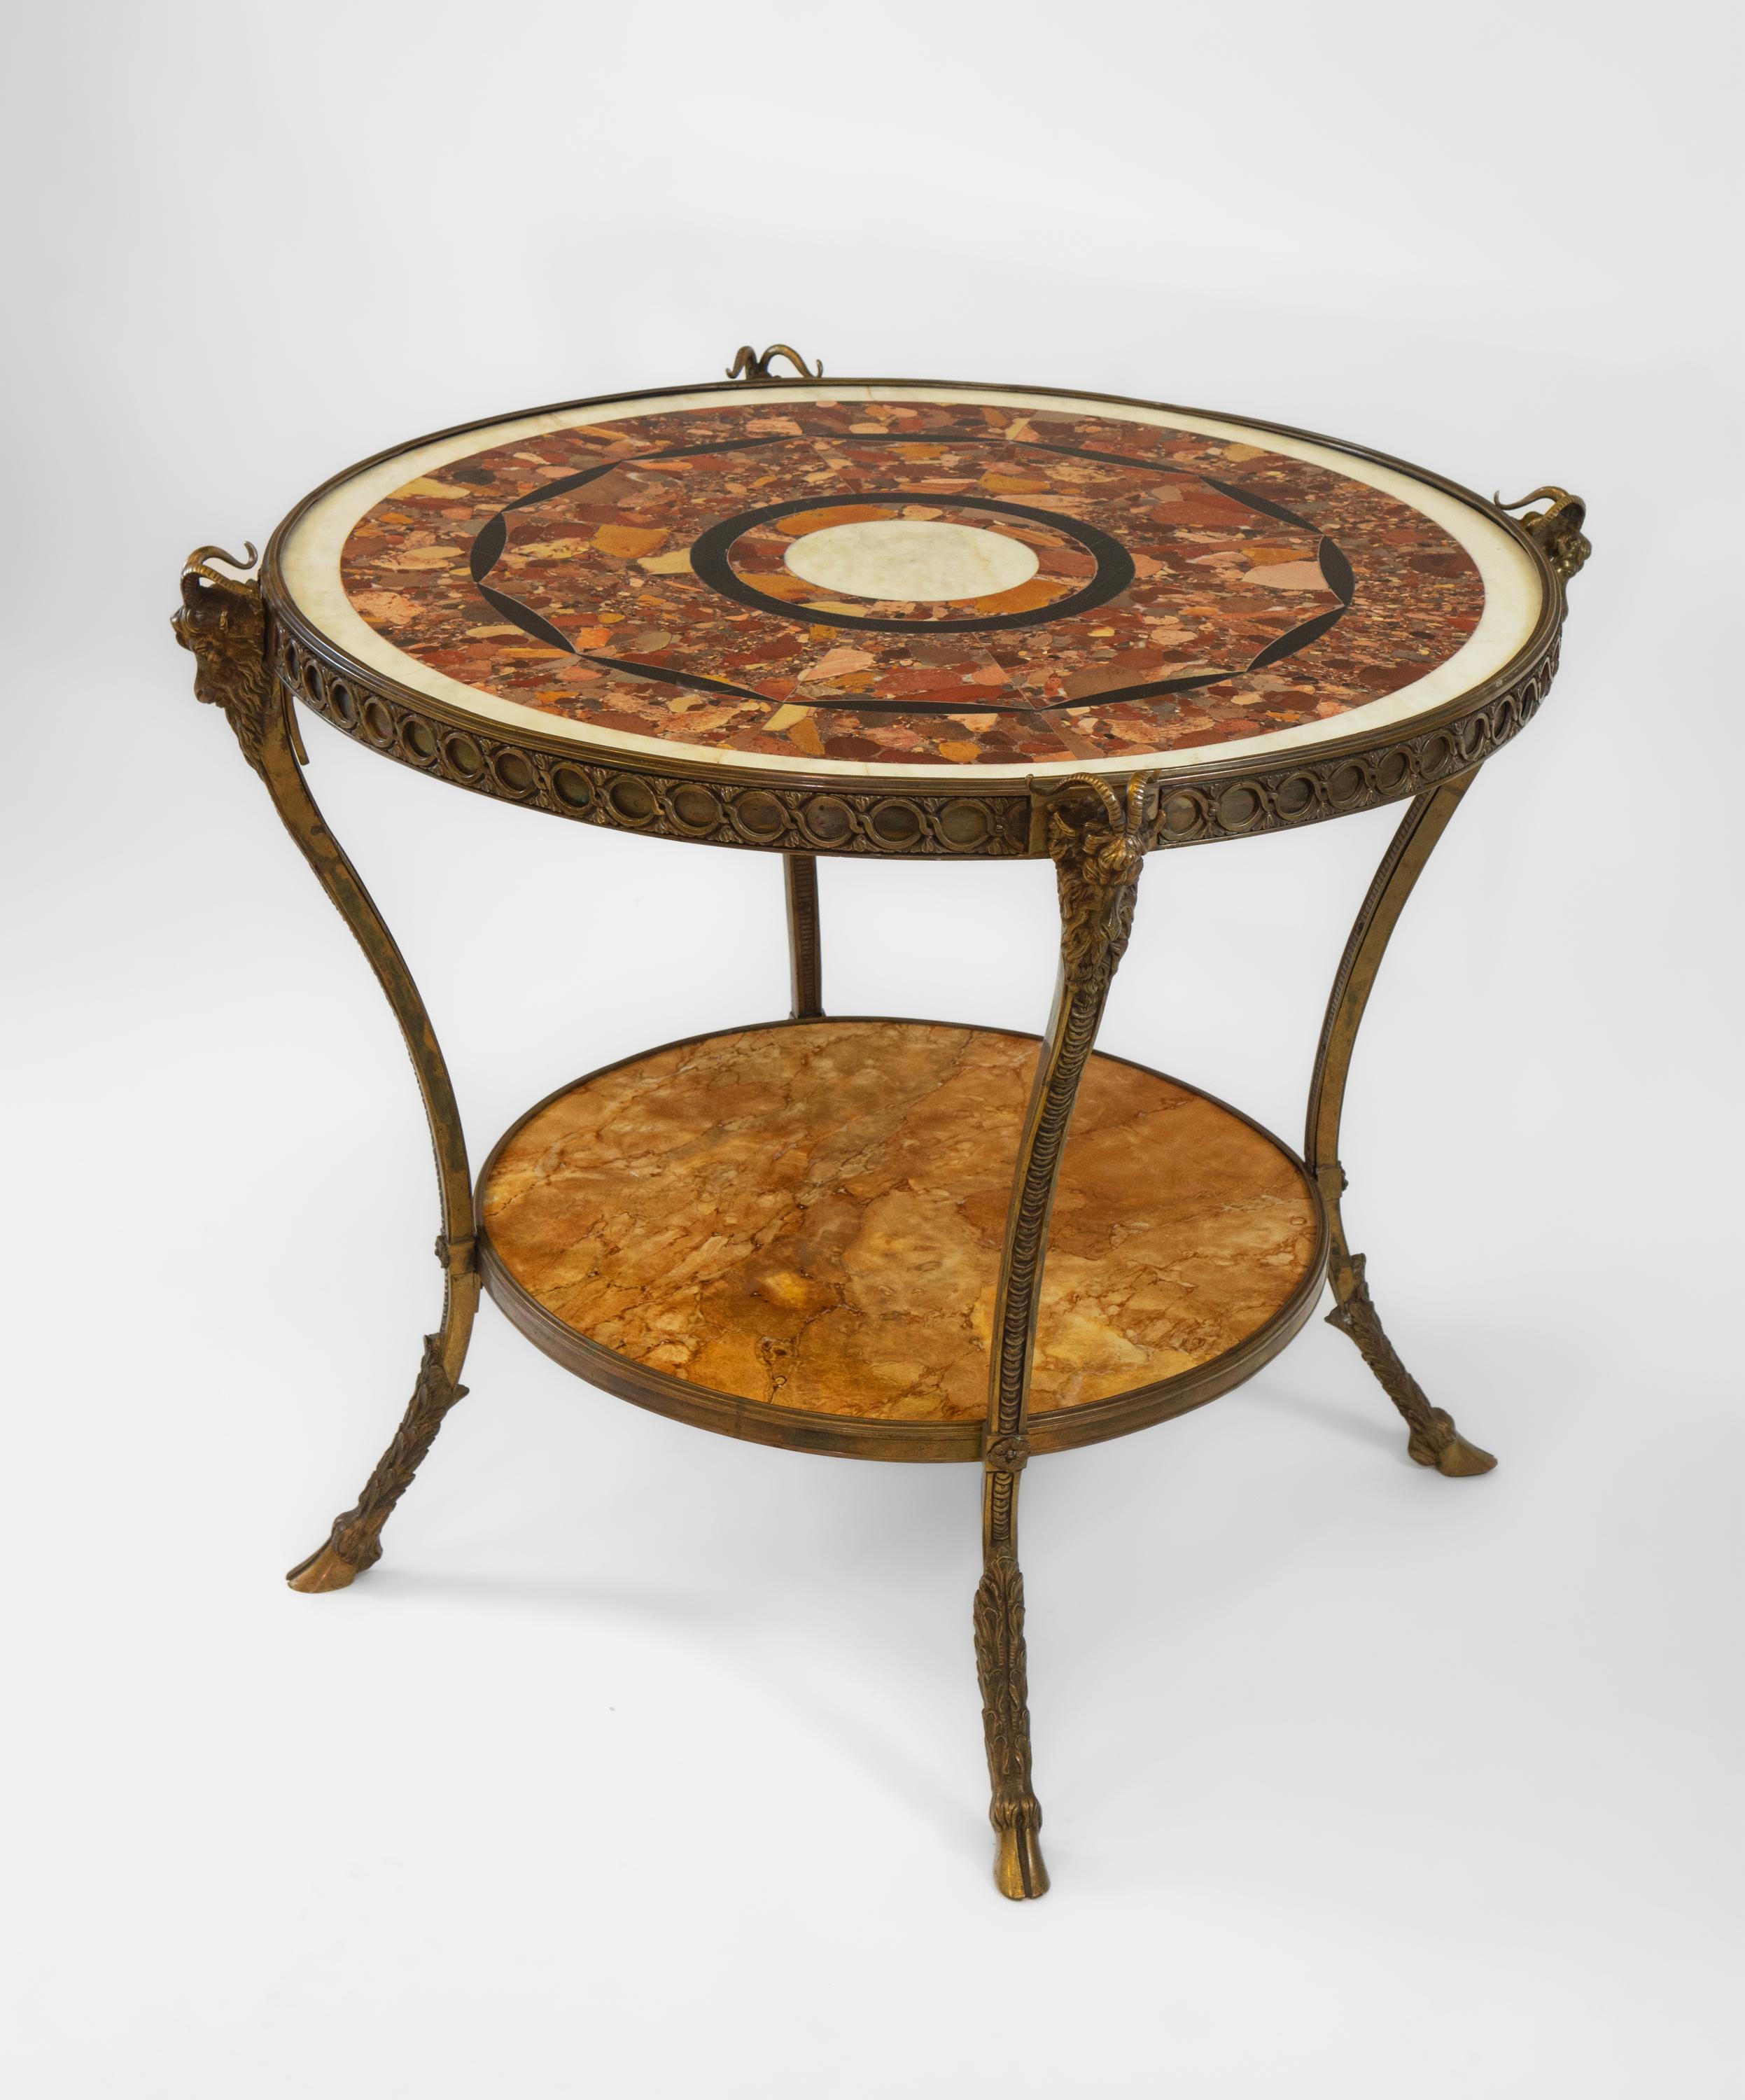 Eine beeindruckende dekorative Französisch Marmor und Bronze Guéridon. Um 1950.

Der Tisch hat ein elegantes und attraktives Design, wobei die runde Platte mit dekorativem, segmentiertem Brèche D' Alep-Marmor versehen ist. Der Tisch wird von einem